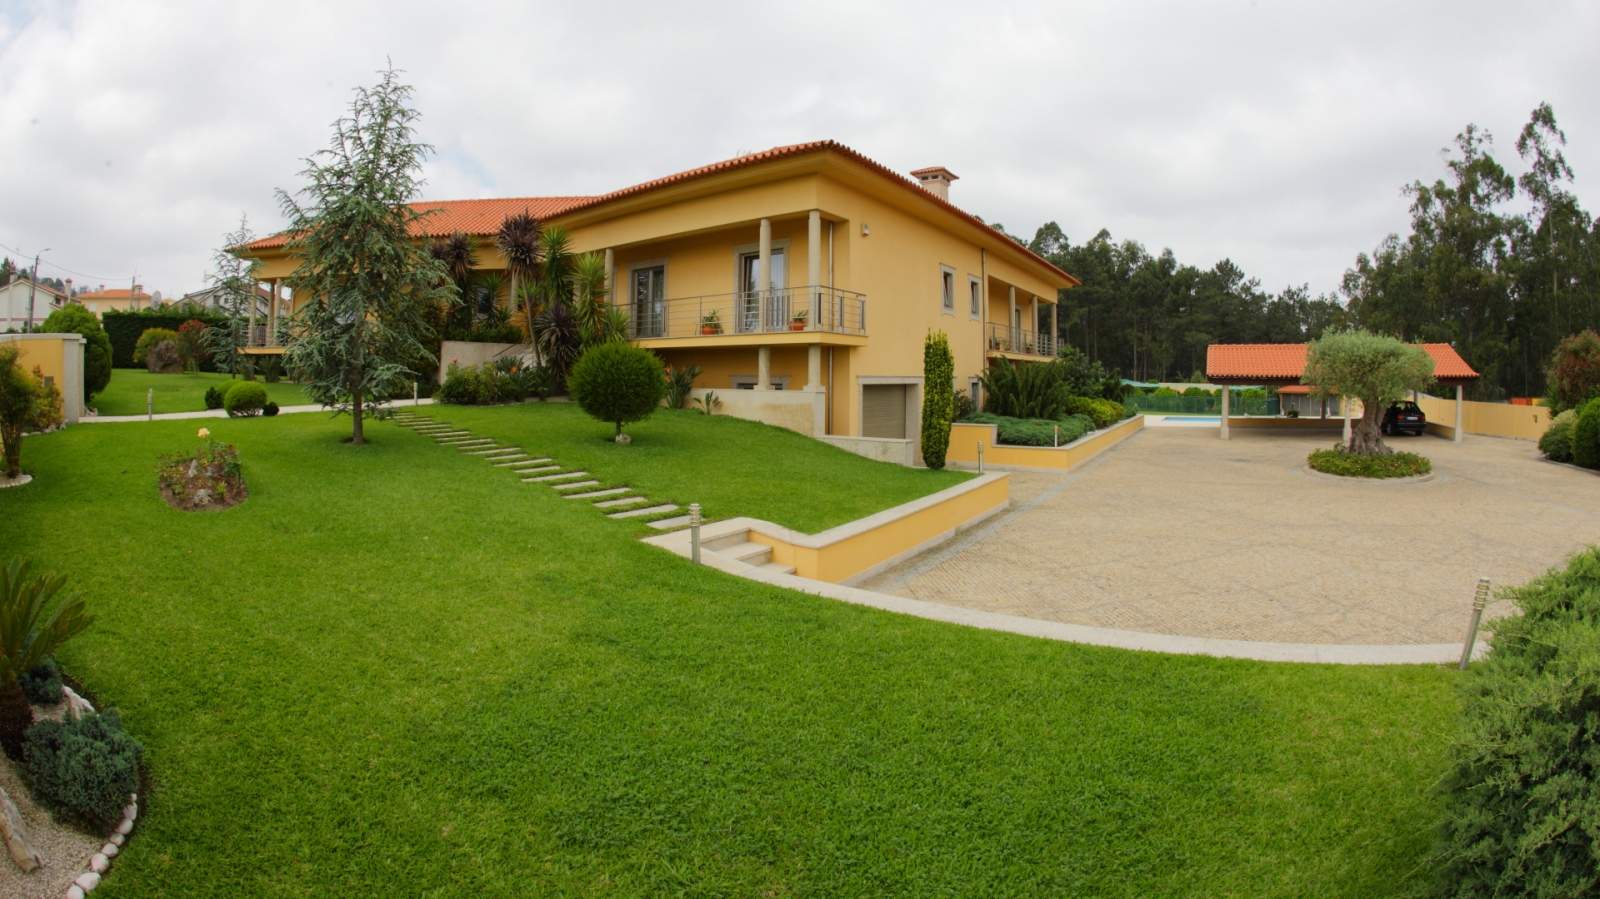 Villa mit Pool und Garten, zu verkaufen, in Póvoa de Varzim, Portugal_22671